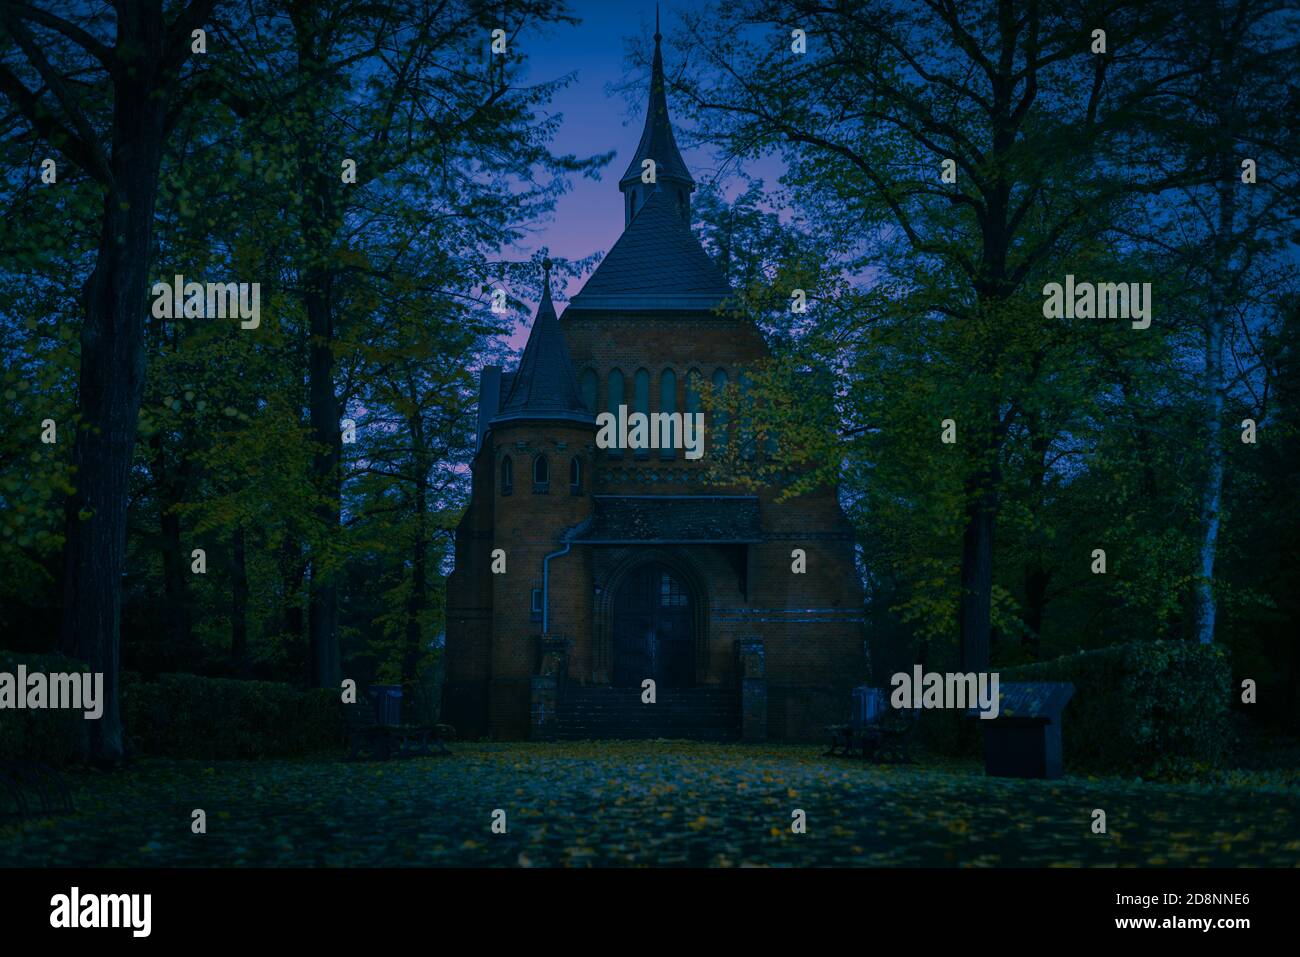 Friedhofskapelle bei Nacht, Herbstbäume, gruselige Kapelle auf einem Friedhof bei Nacht, abstrakte Farben, bunt, kunstvoll Stockfoto